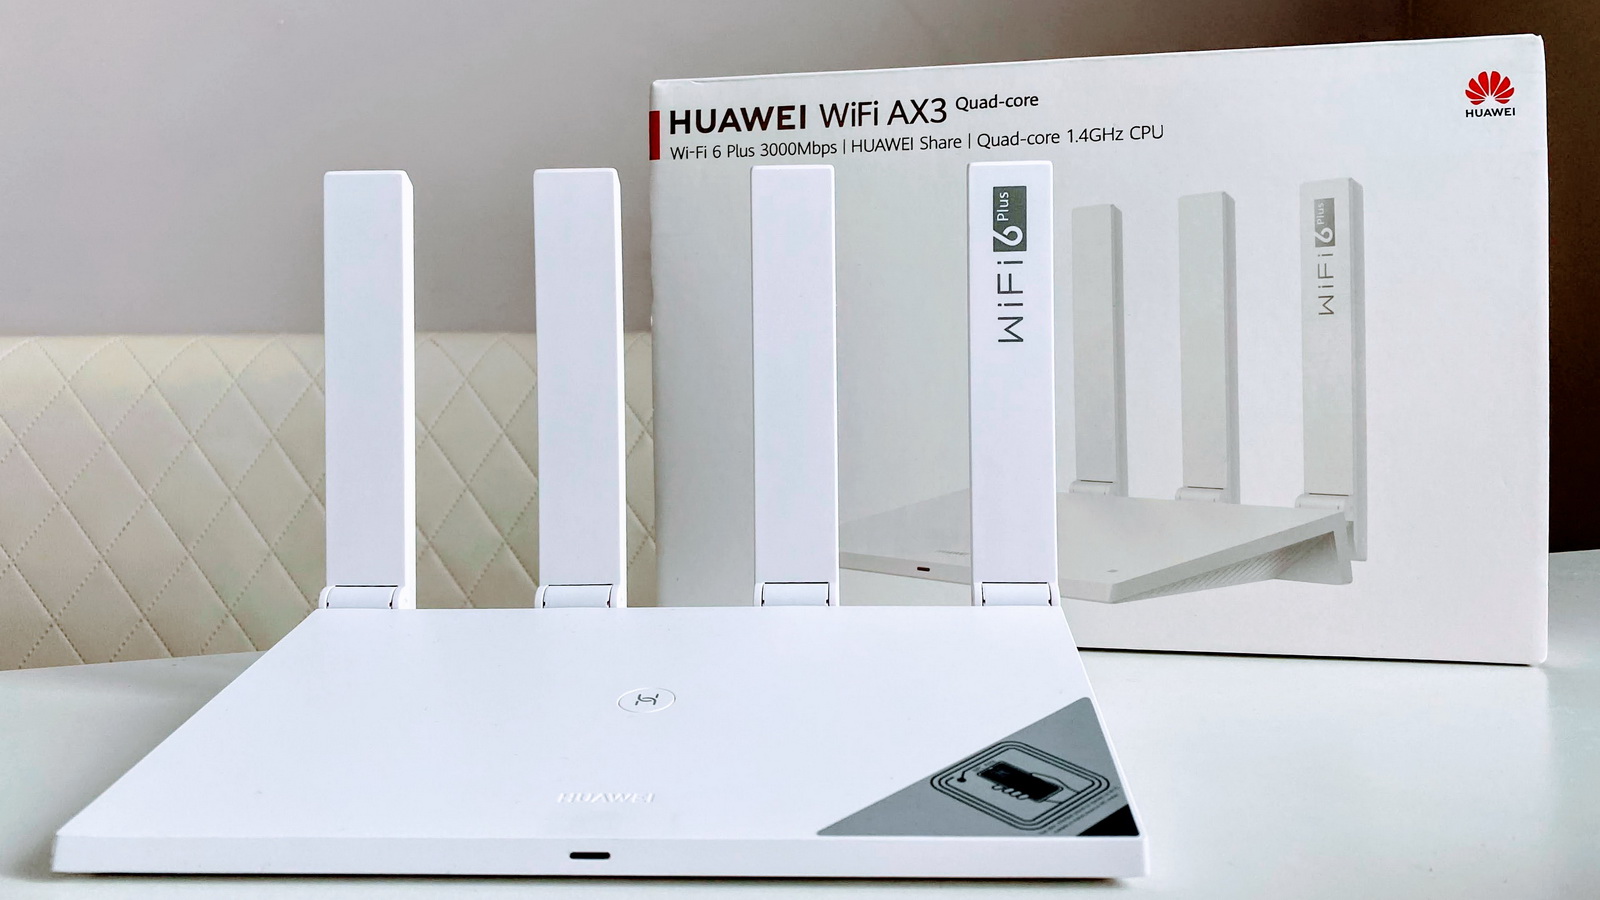 Huawei ax2 new. Wi-Fi роутер Huawei ax3 ws7200. Роутер Huawei ax3 Quad Core Wi-Fi 6. Wi-Fi роутер Huawei ws7200 (ax3 Quad-Core). Wi-Fi роутер Huawei ws7200 (ax3) Pro ax3000.